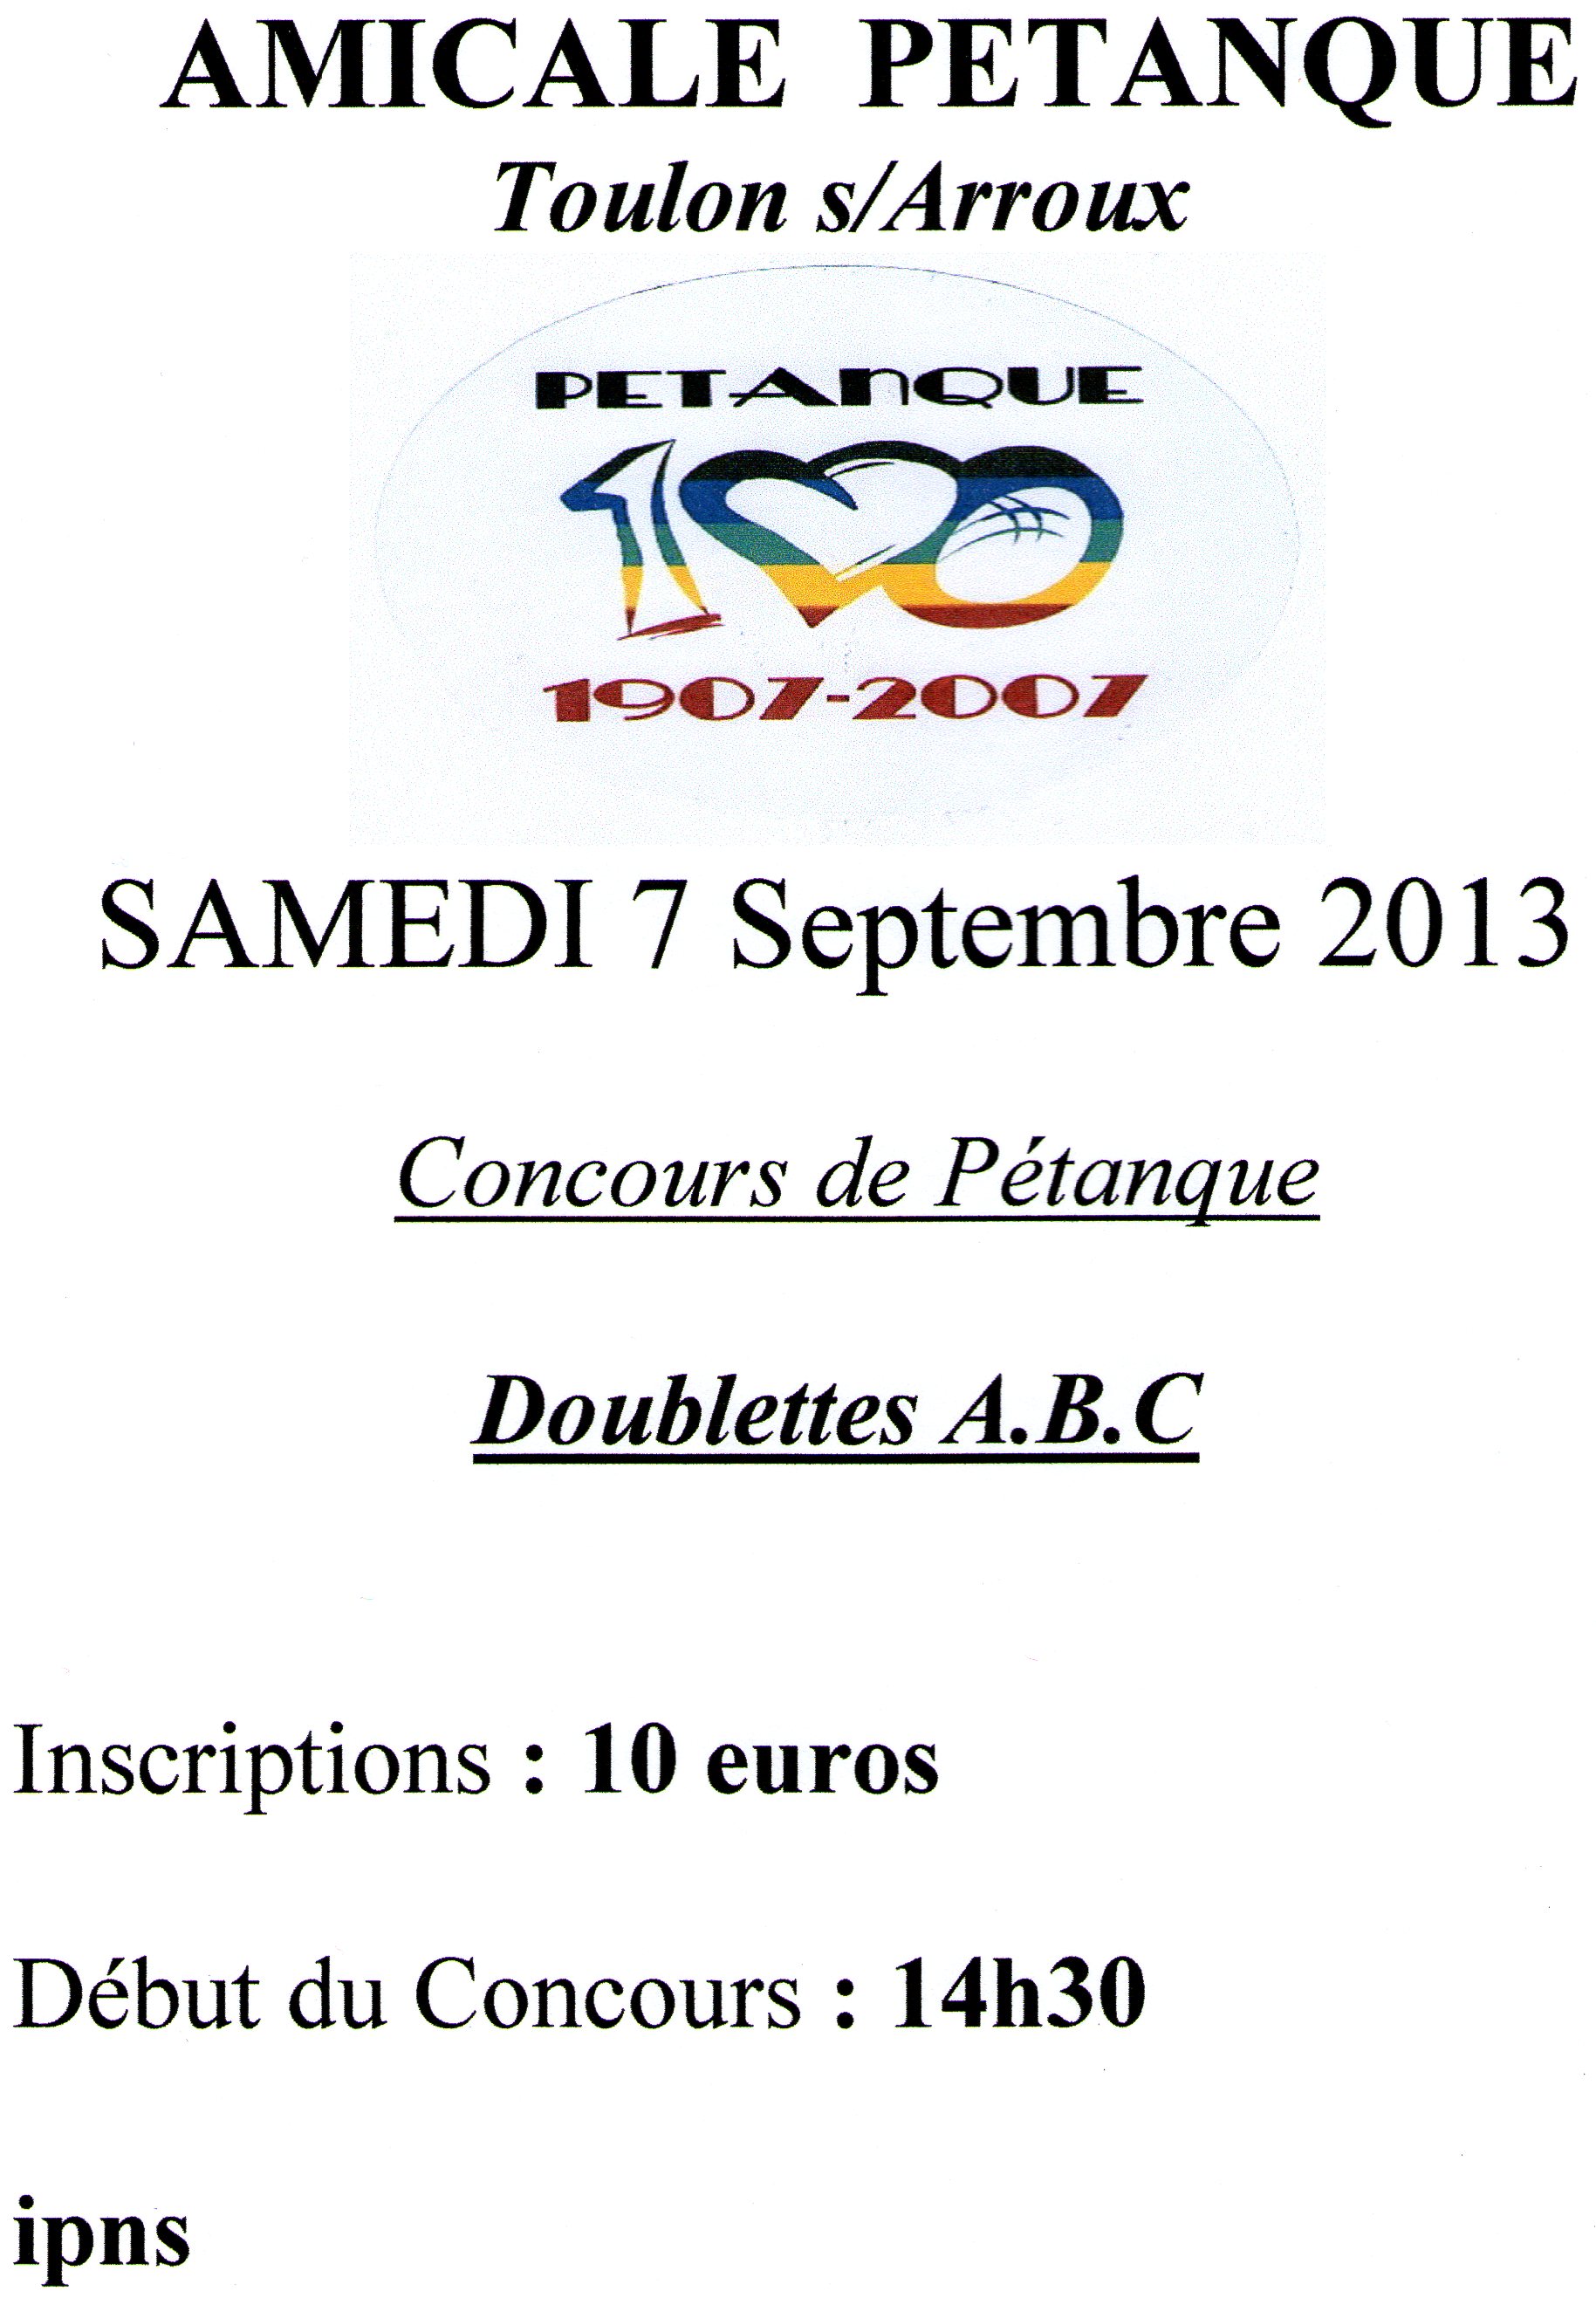 Concours Toulon s/Arroux samedi  7 septembre 2013